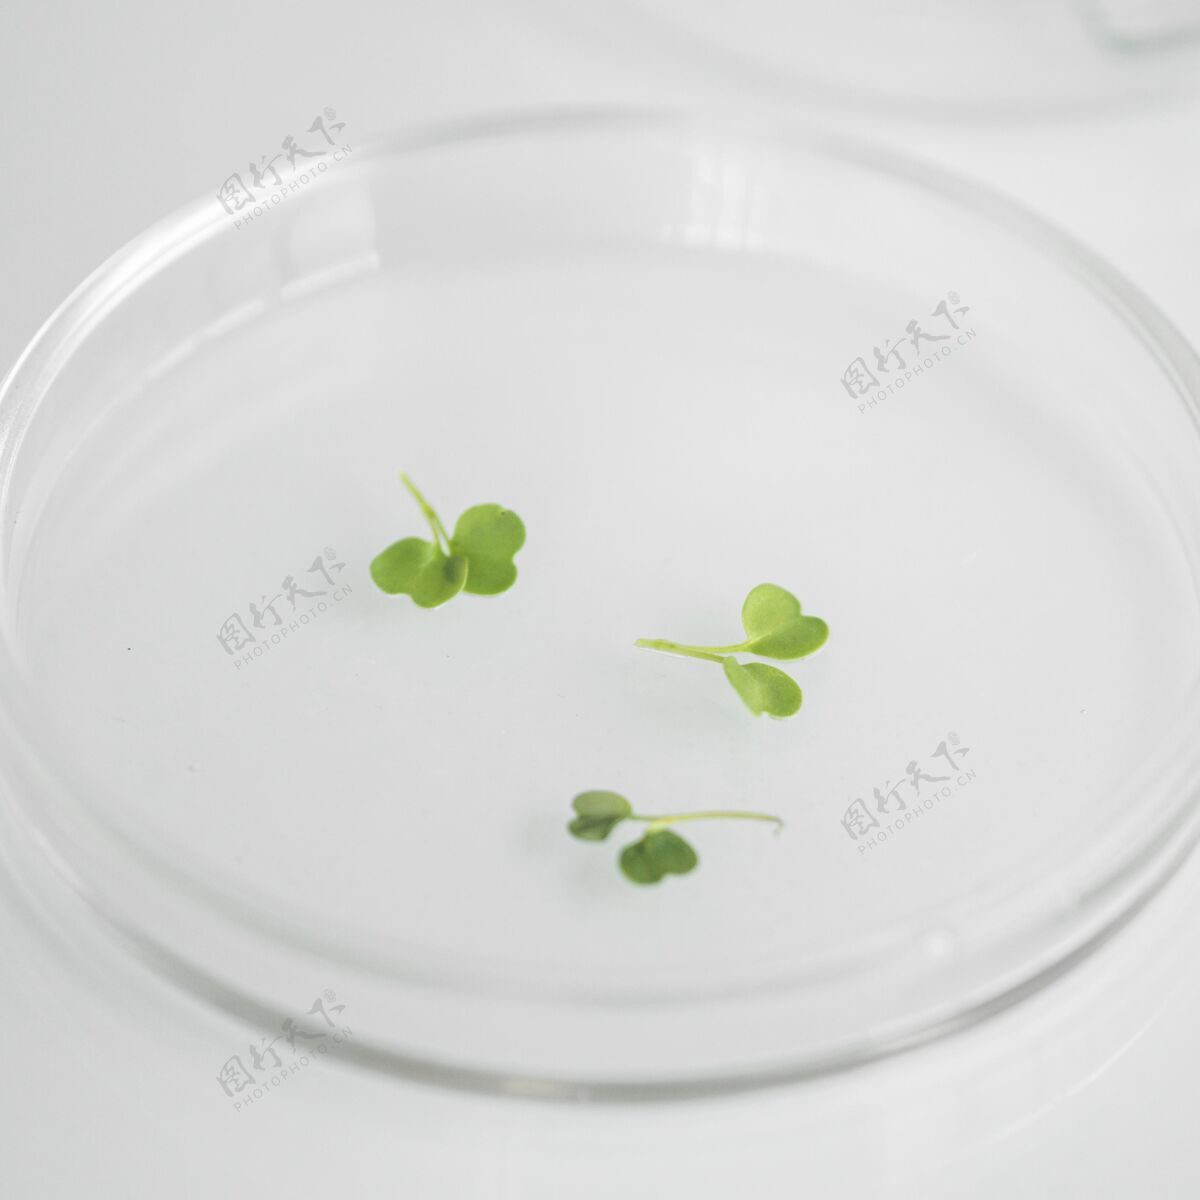 有机体生物技术实验室培养皿的高角度技术正方形生物化学